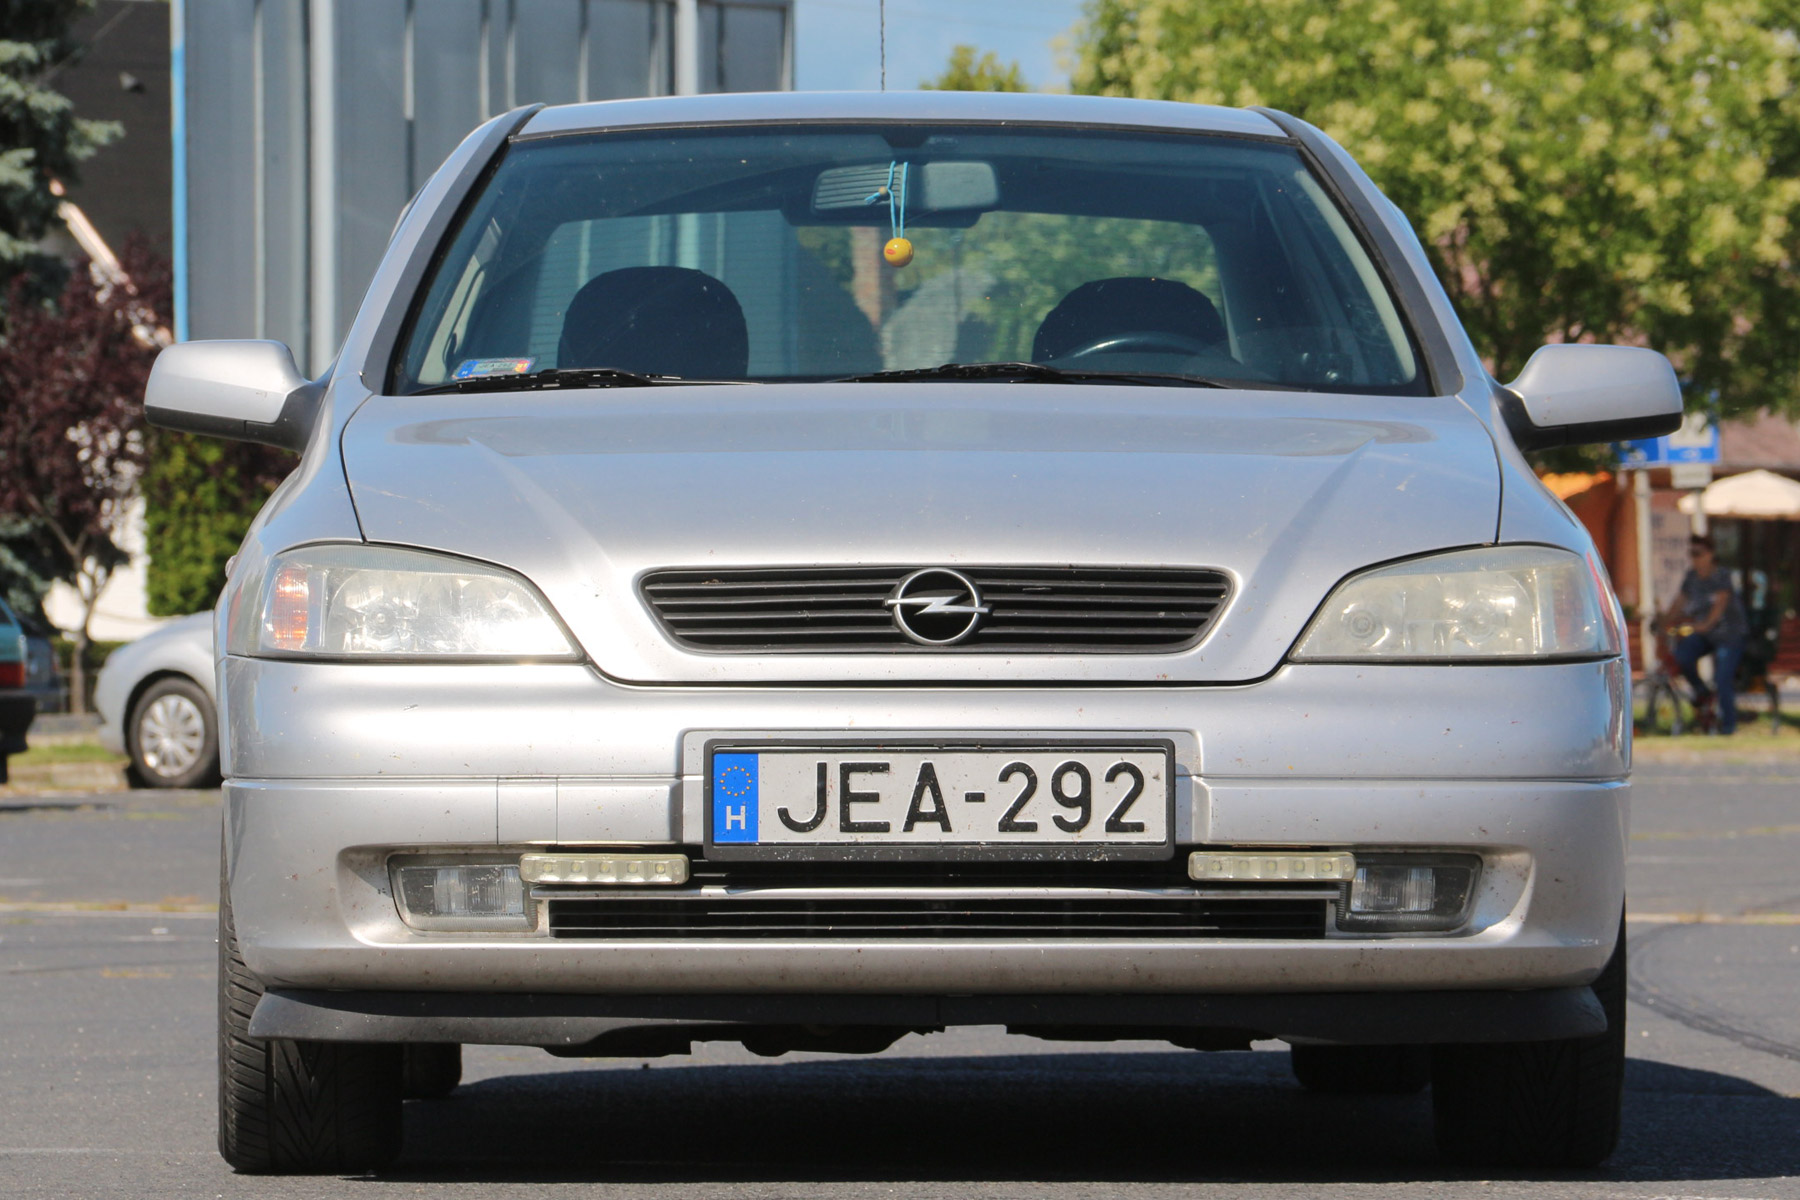 Használt autó: ilyen egy Opel Astra 446 601 km-rel 4